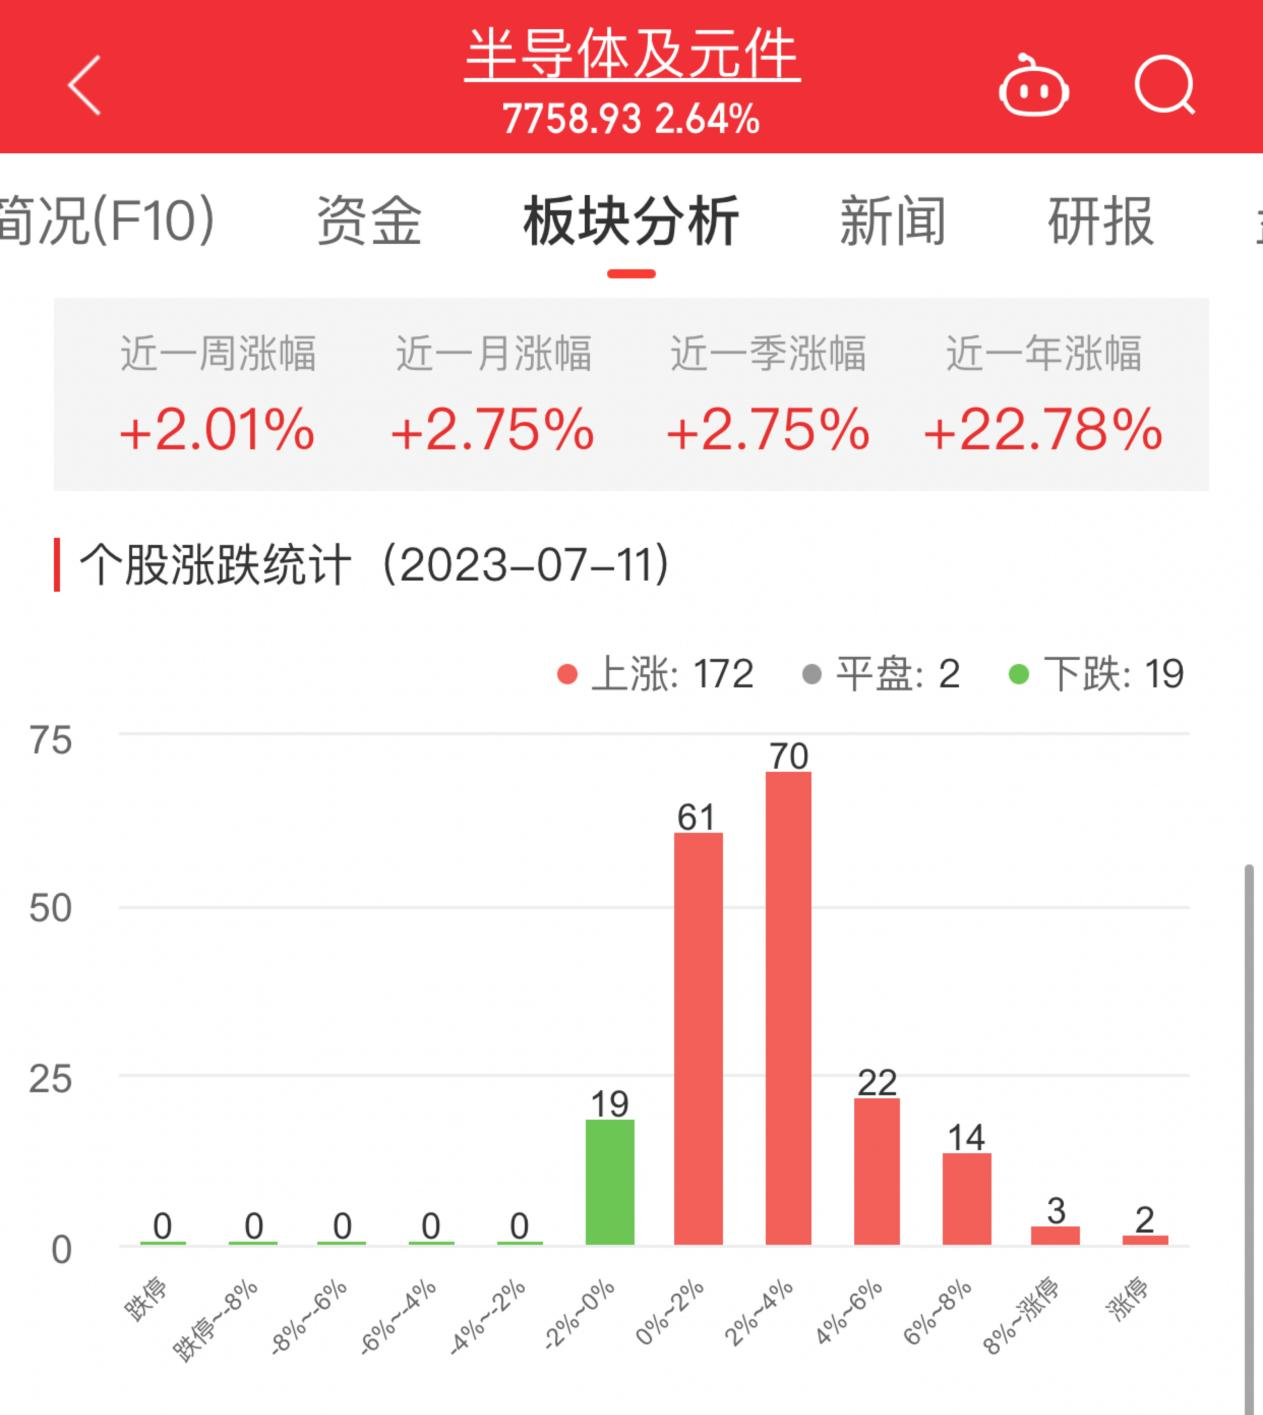 半导体板块涨2.64% 华海诚科涨20%居首